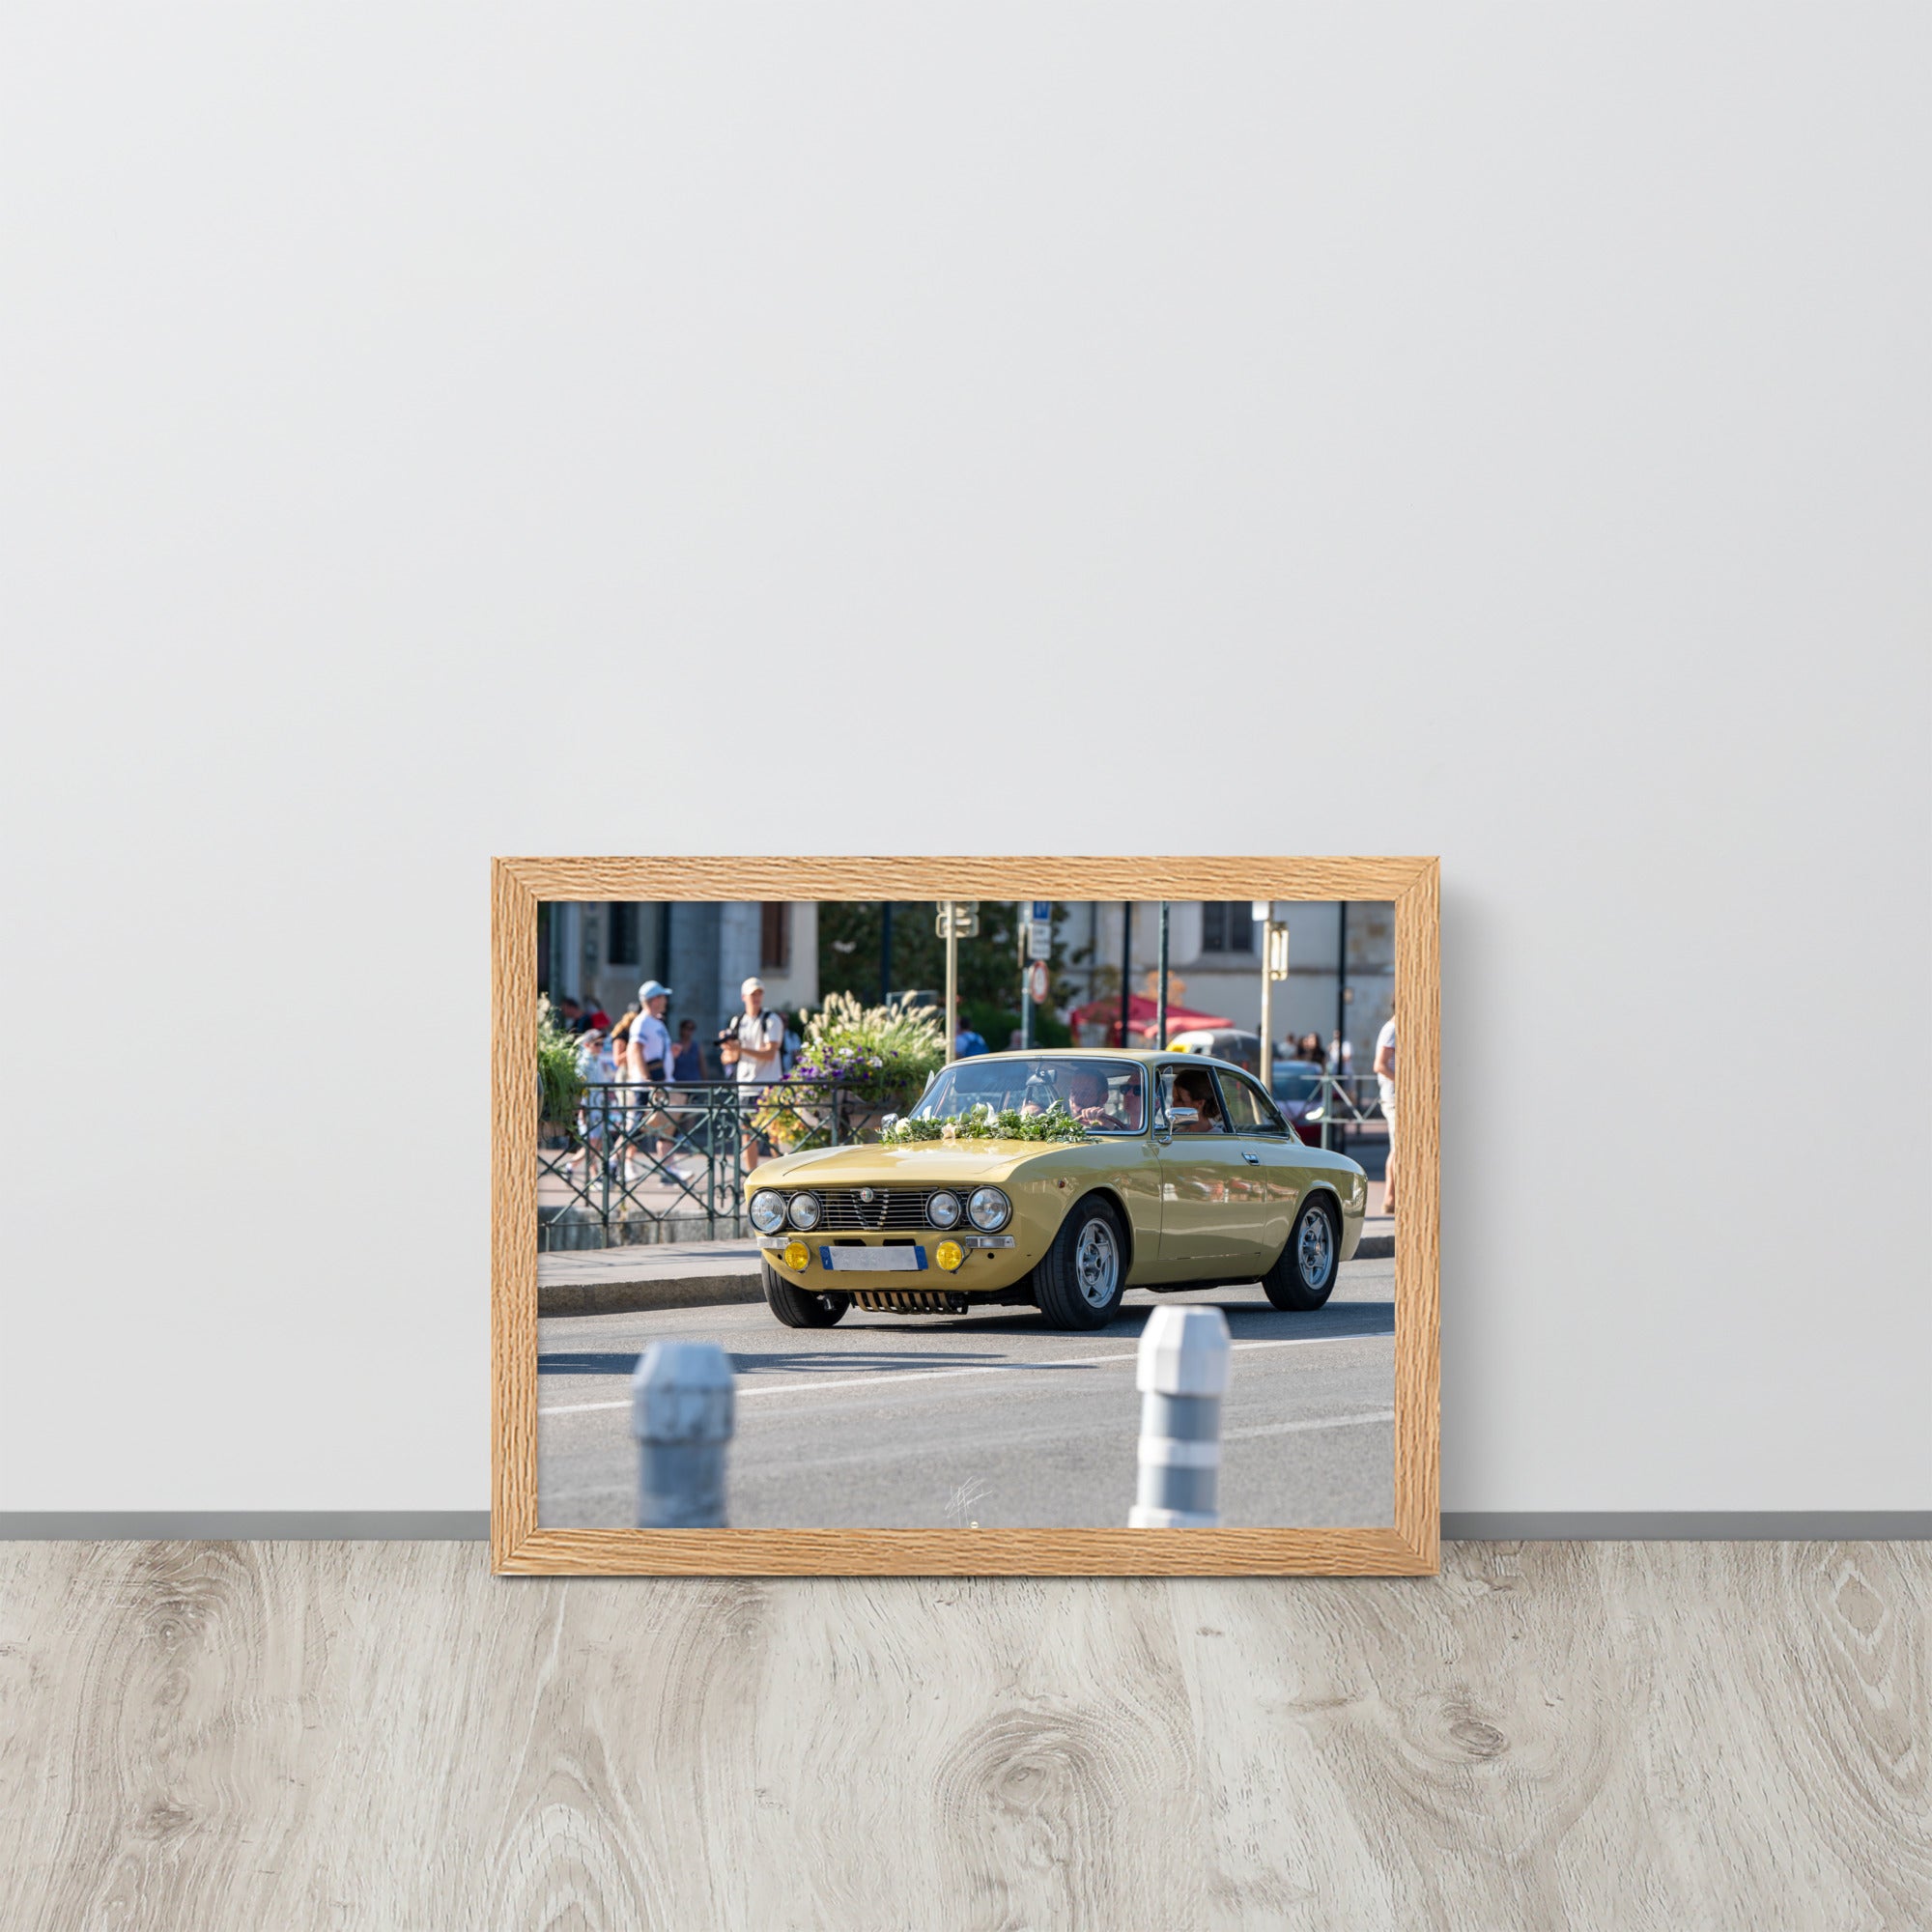 Photographie en angle de la voiture Alpha Romeo GTV, mise en valeur par sa teinte jaune vibrante et sa forme emblématique, stationnée élégamment dans une rue de ville.